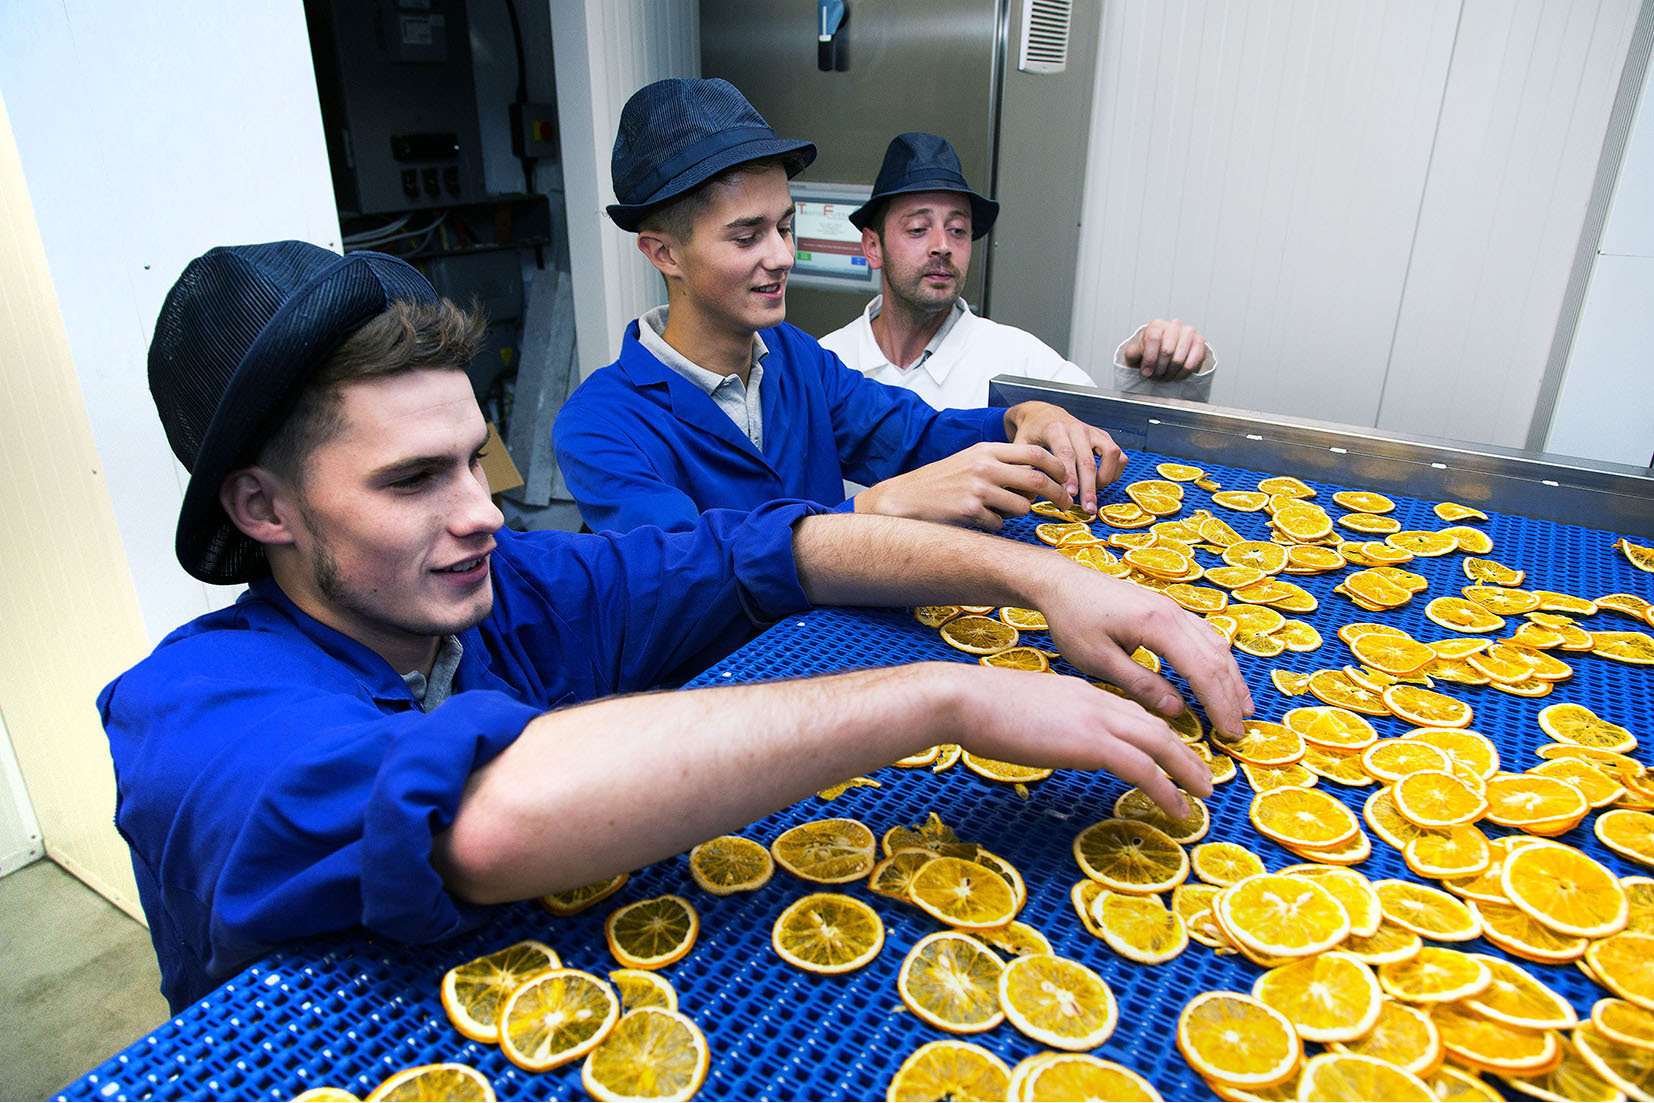 Nim's Fruit Crisps employees, from left, Pawel Janas, Edmunds Zvirgzdins and Myer Trinkwon